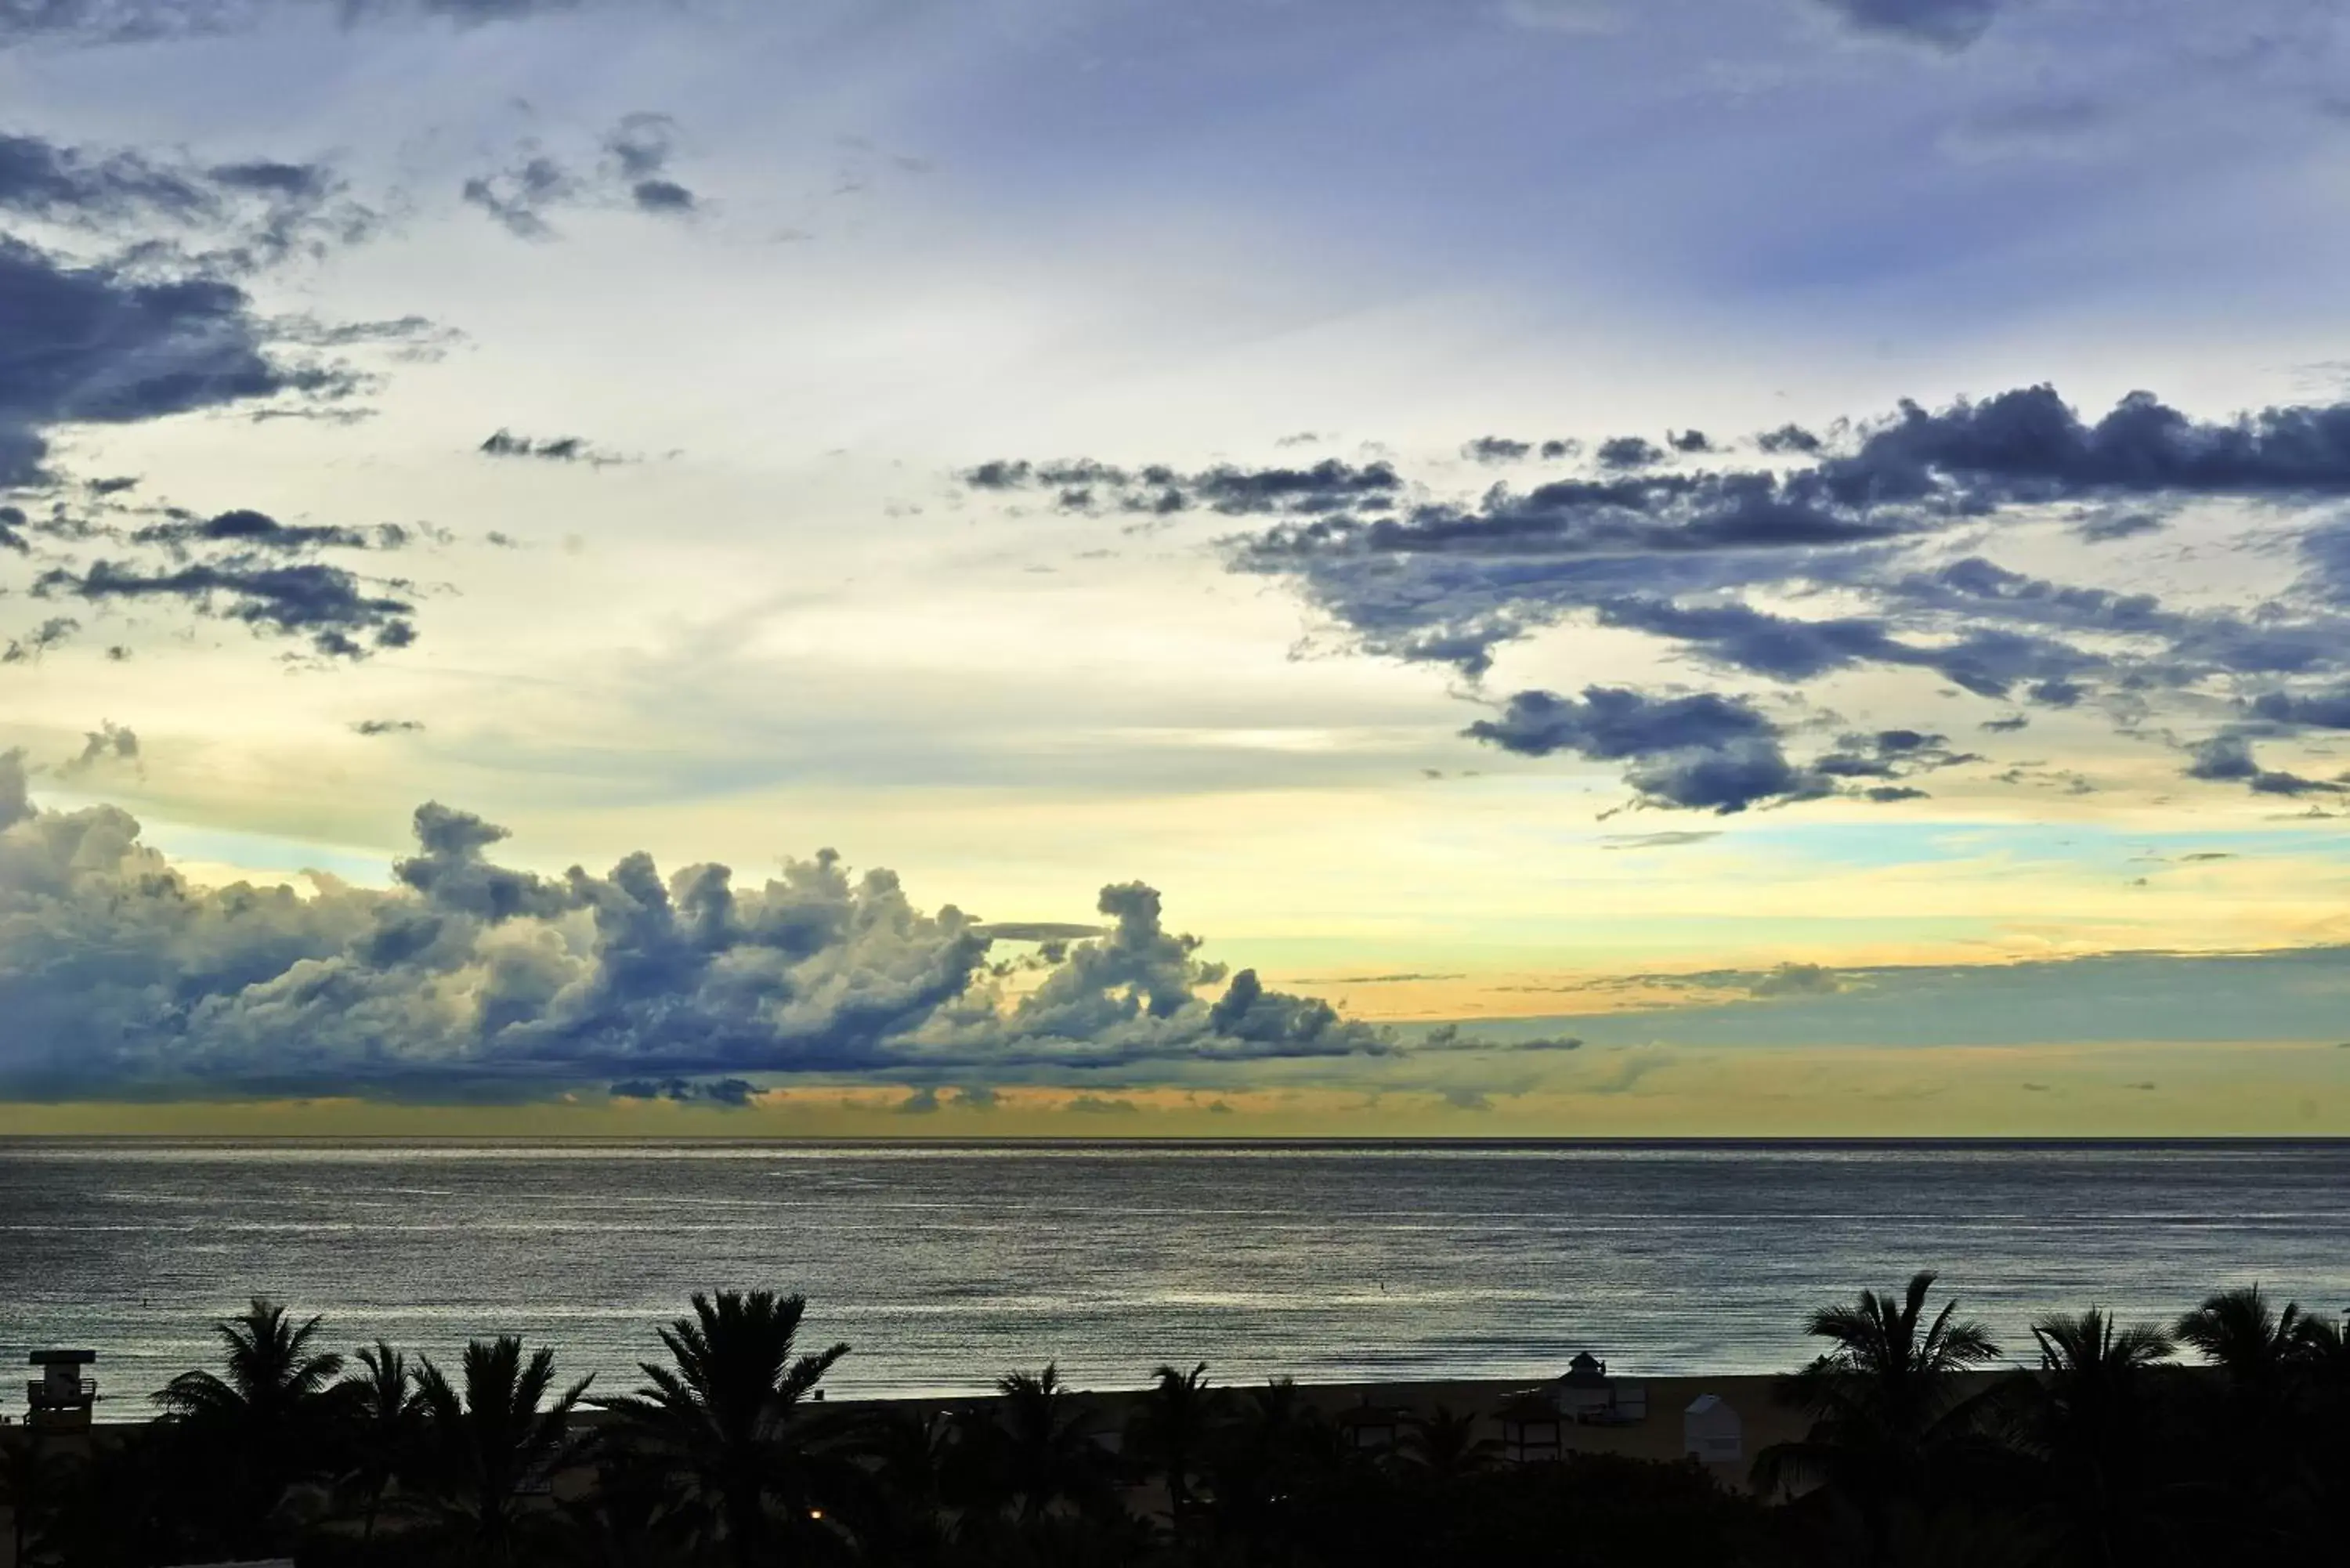 Natural landscape, Sunrise/Sunset in Nautilus Sonesta Miami Beach